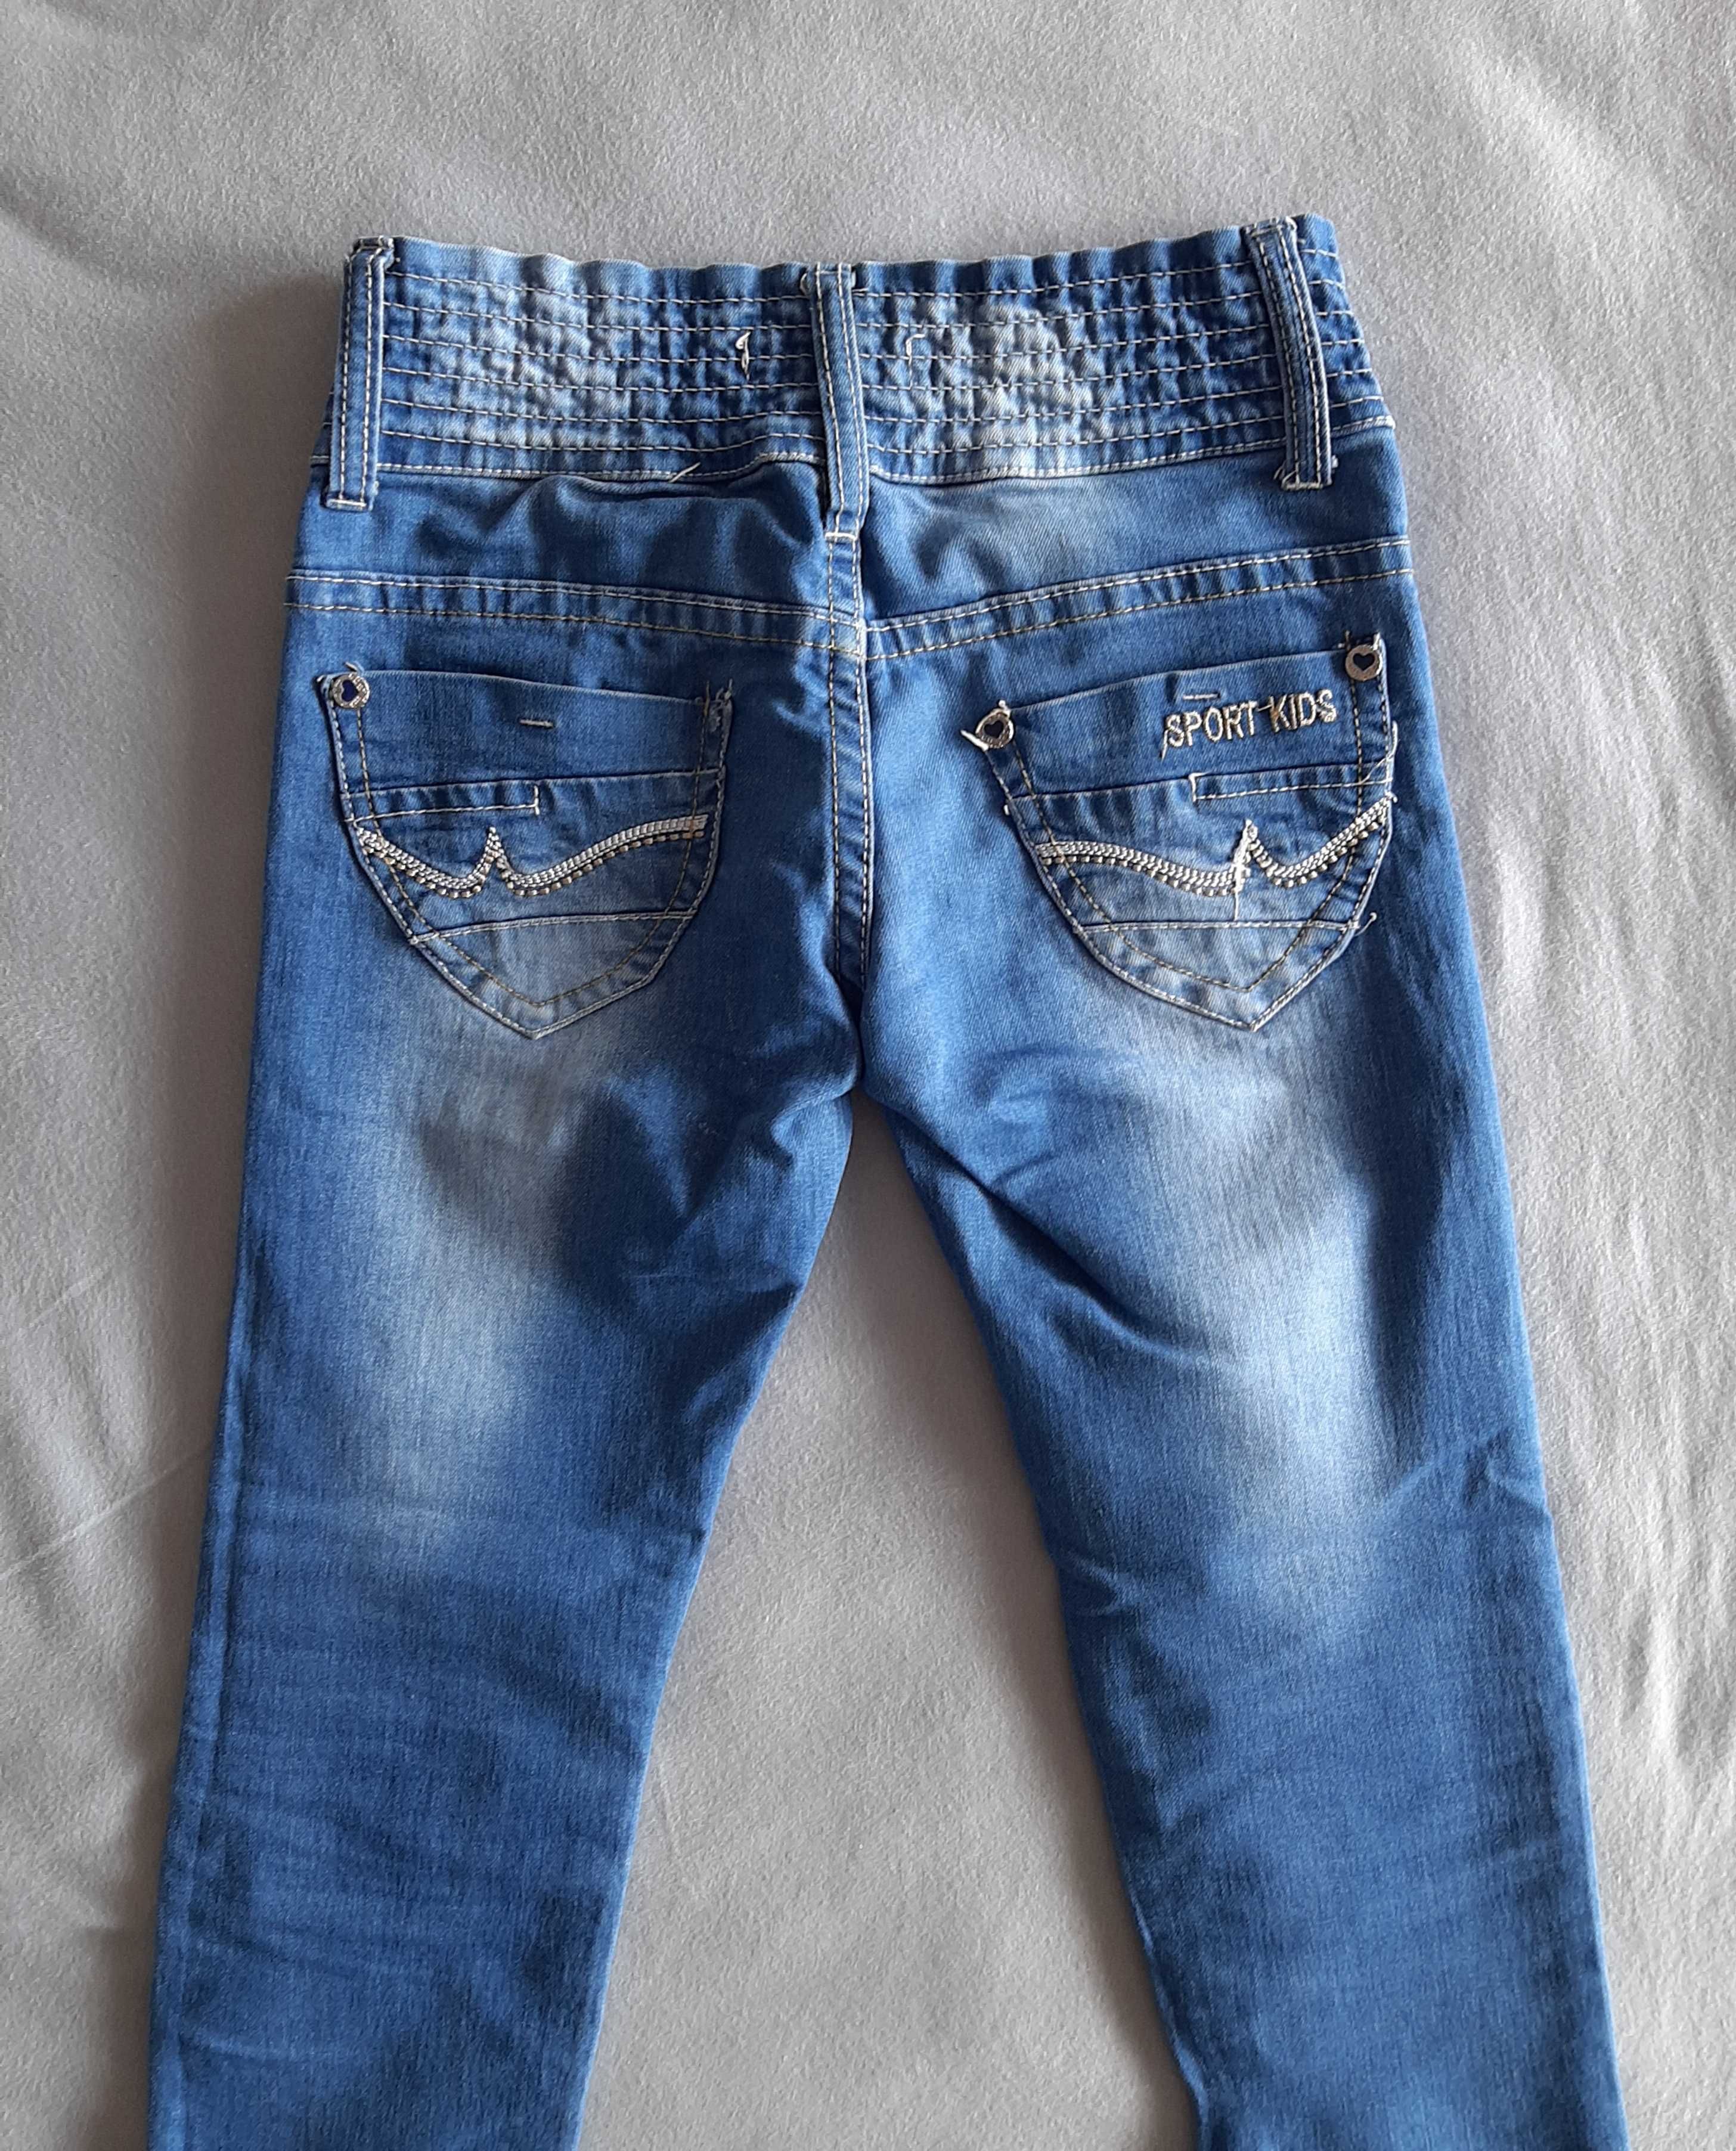 Bluza + spodnie jeans rozm.134/140 zestaw komplet stan vdb